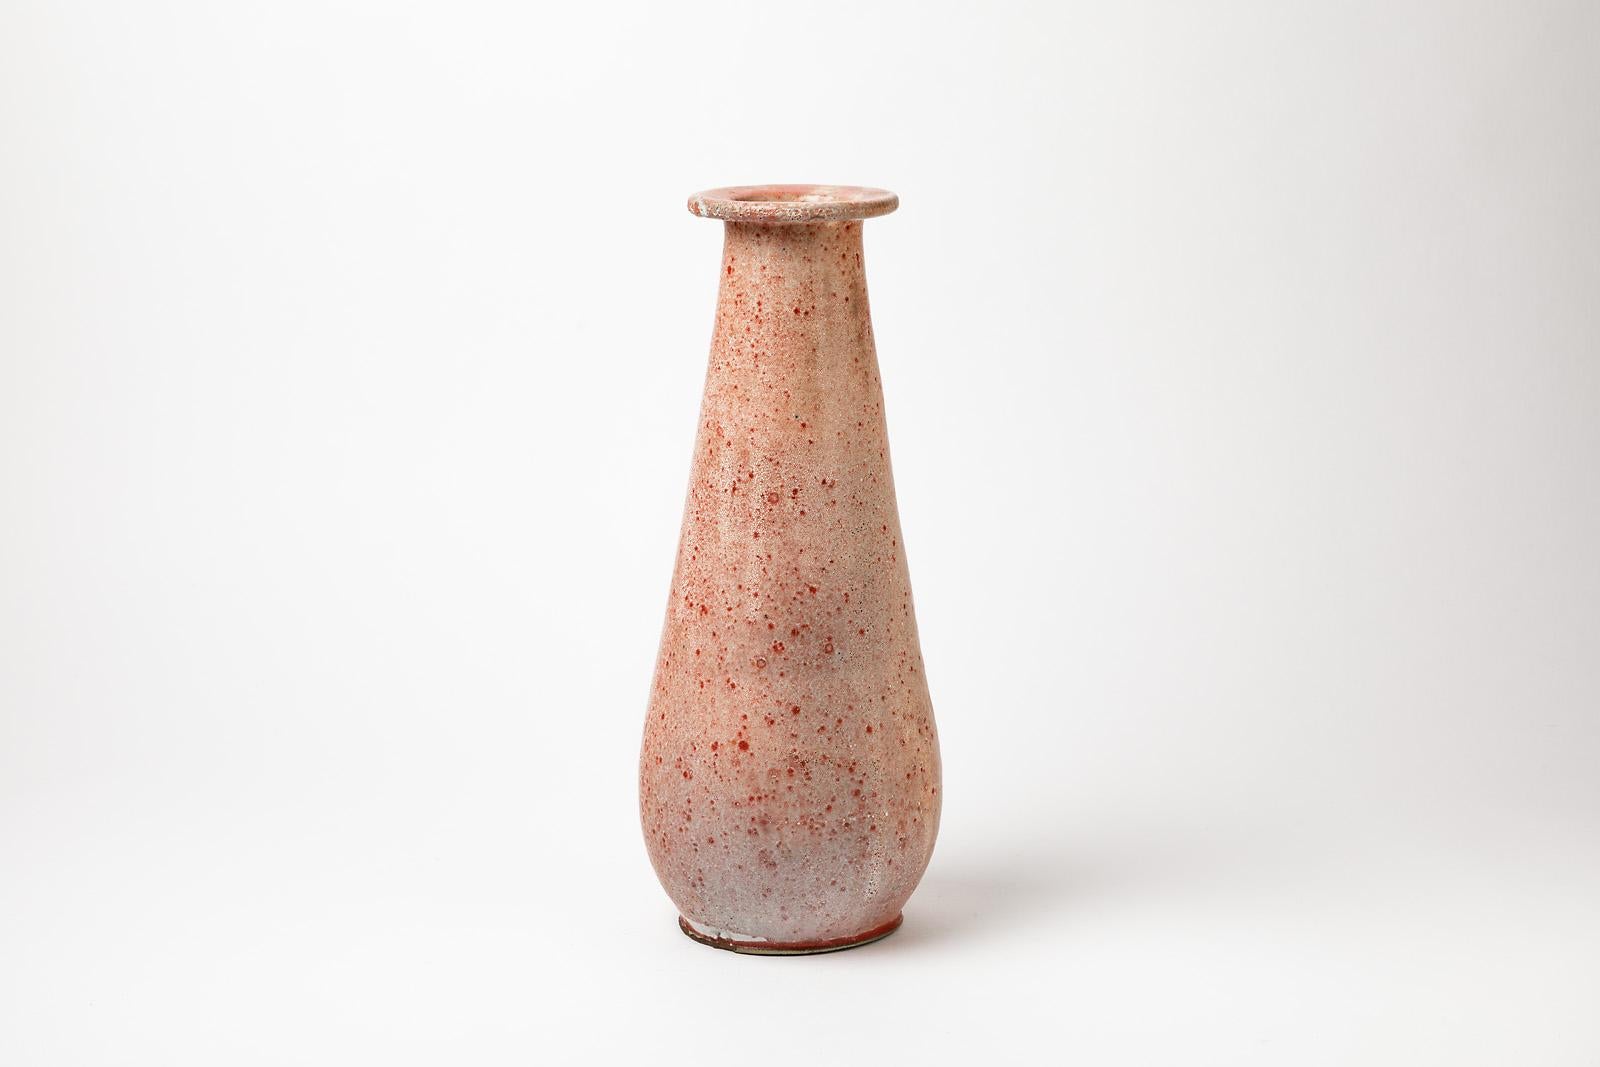 Jacques Lenoble zugeschrieben

Elegante Keramikvase mit rosafarbener Keramikglasur.

Schöne handgefertigte Form, typisch für die 1930er Jahre.

Unter dem Sockel mit J signiert.

Abmessungen: 34 x 13 x 13cm.